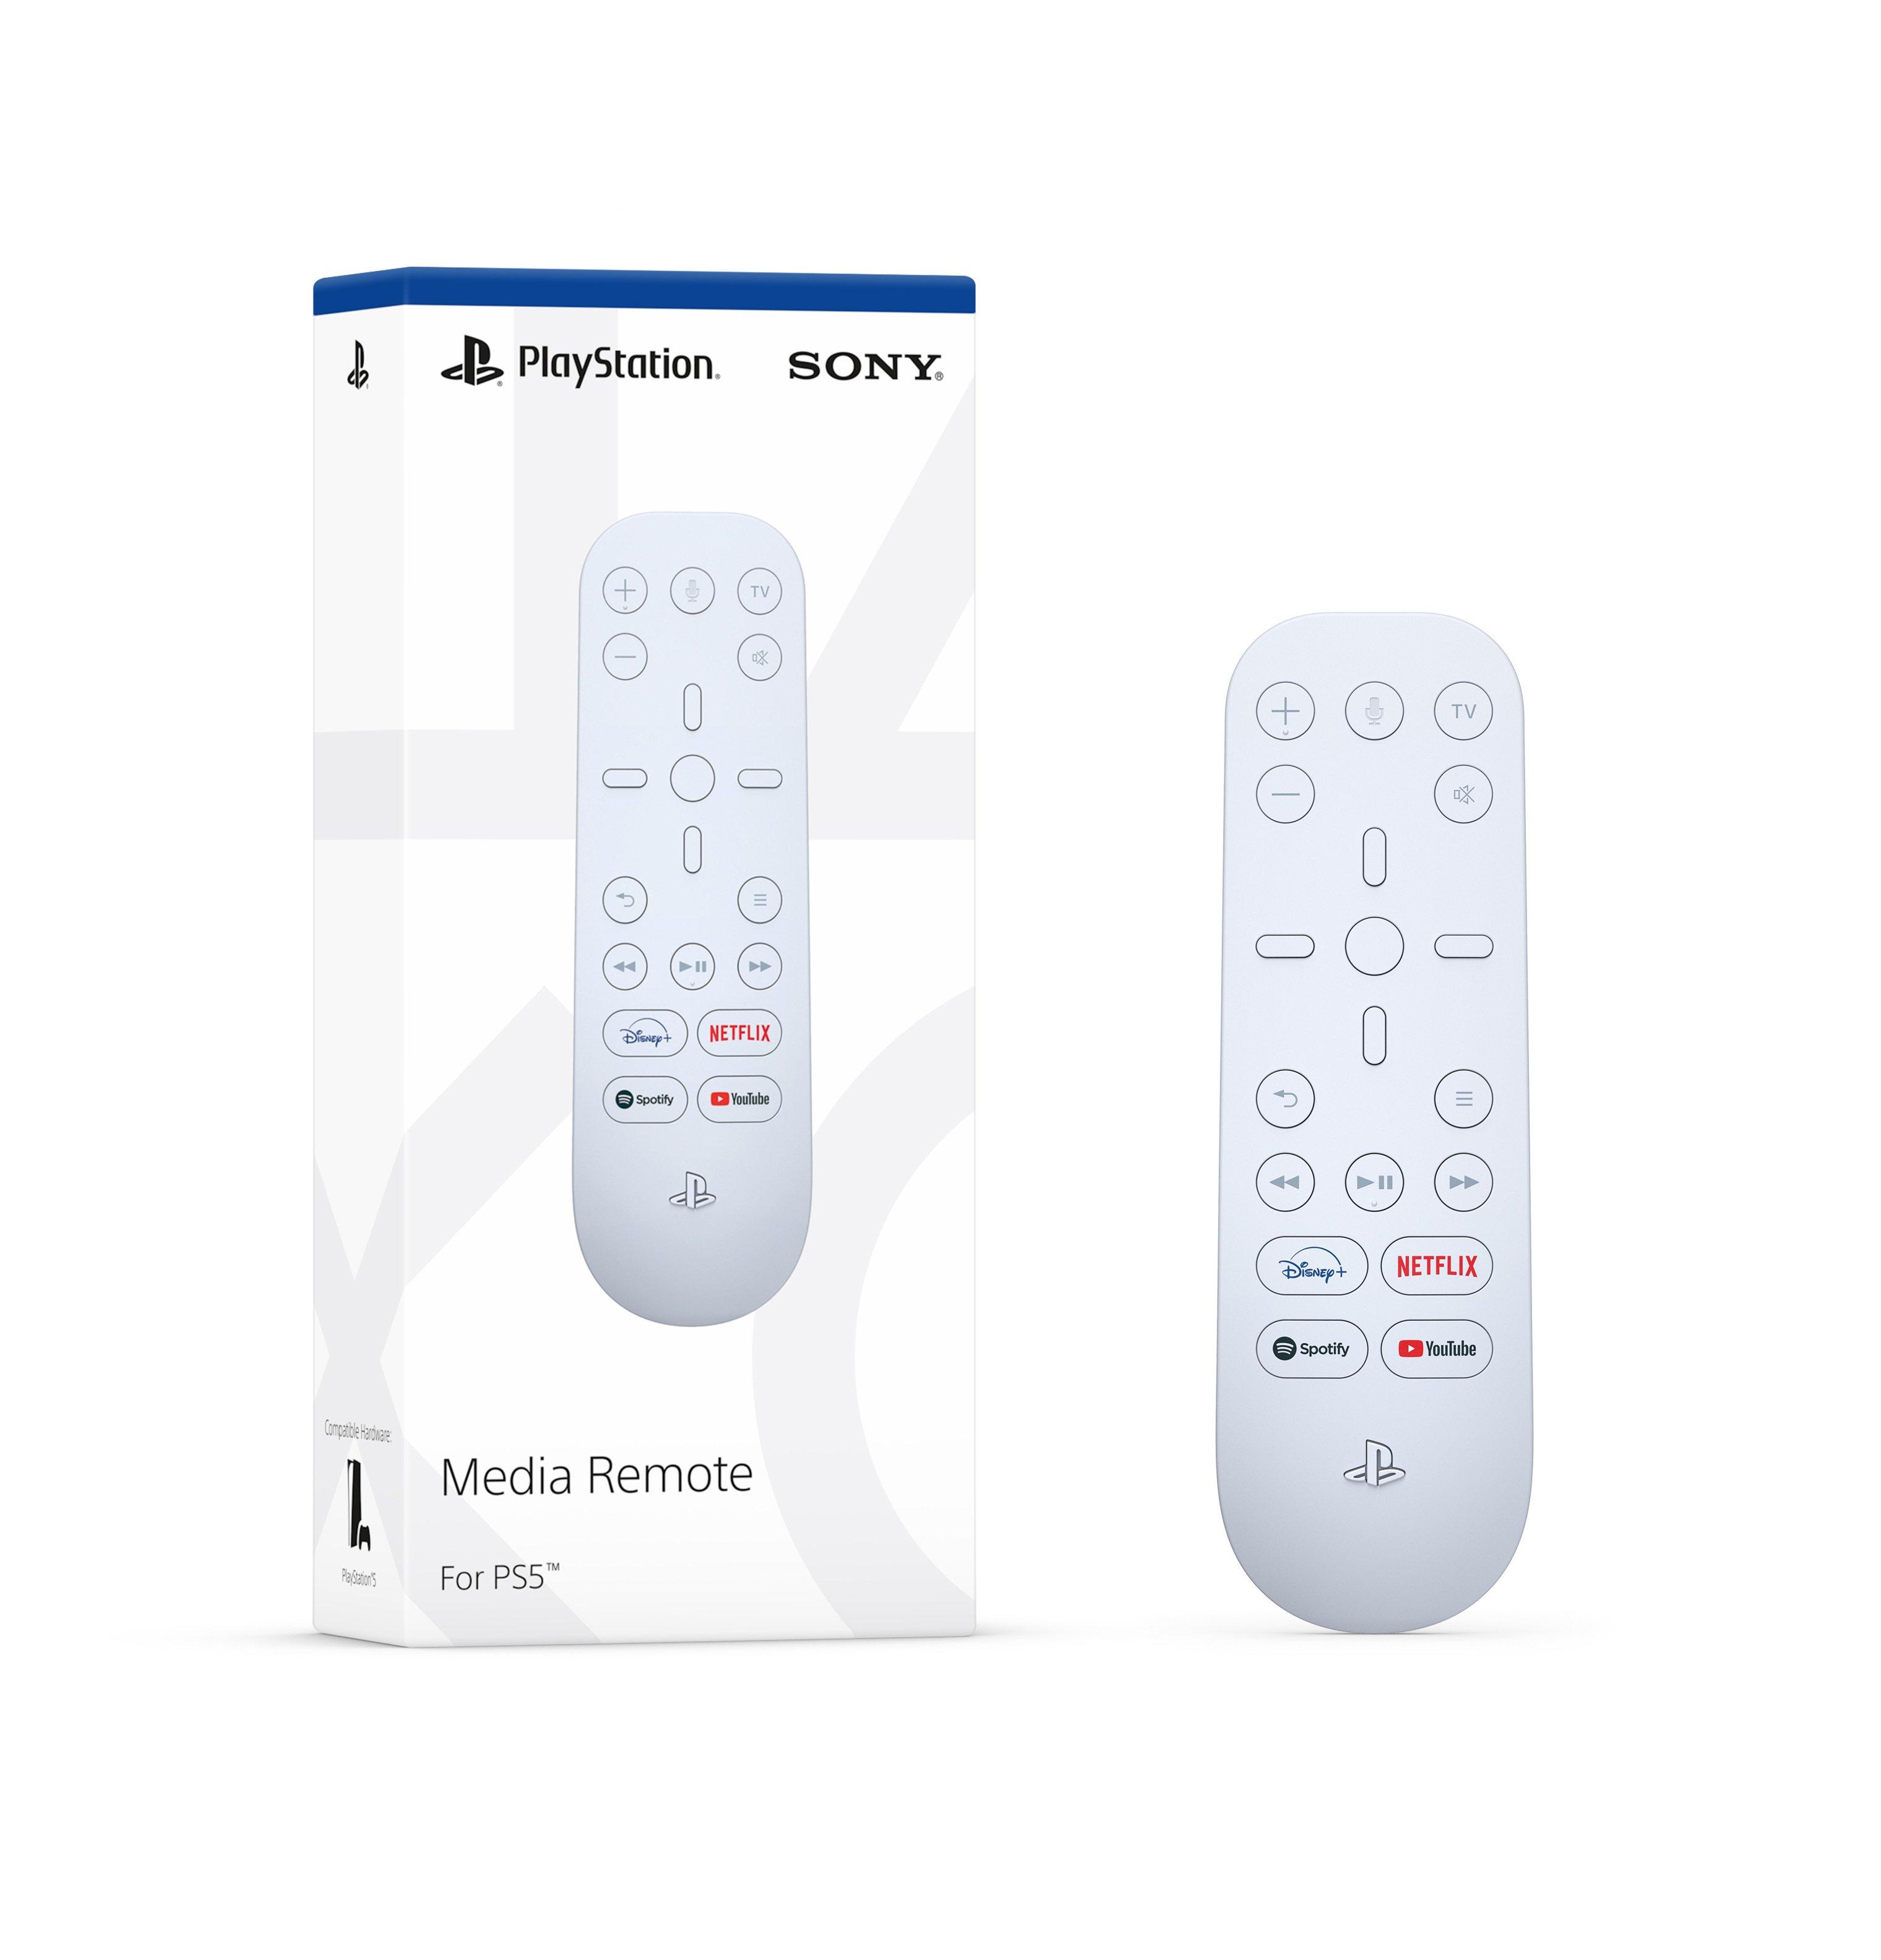 Playstation Media Remote